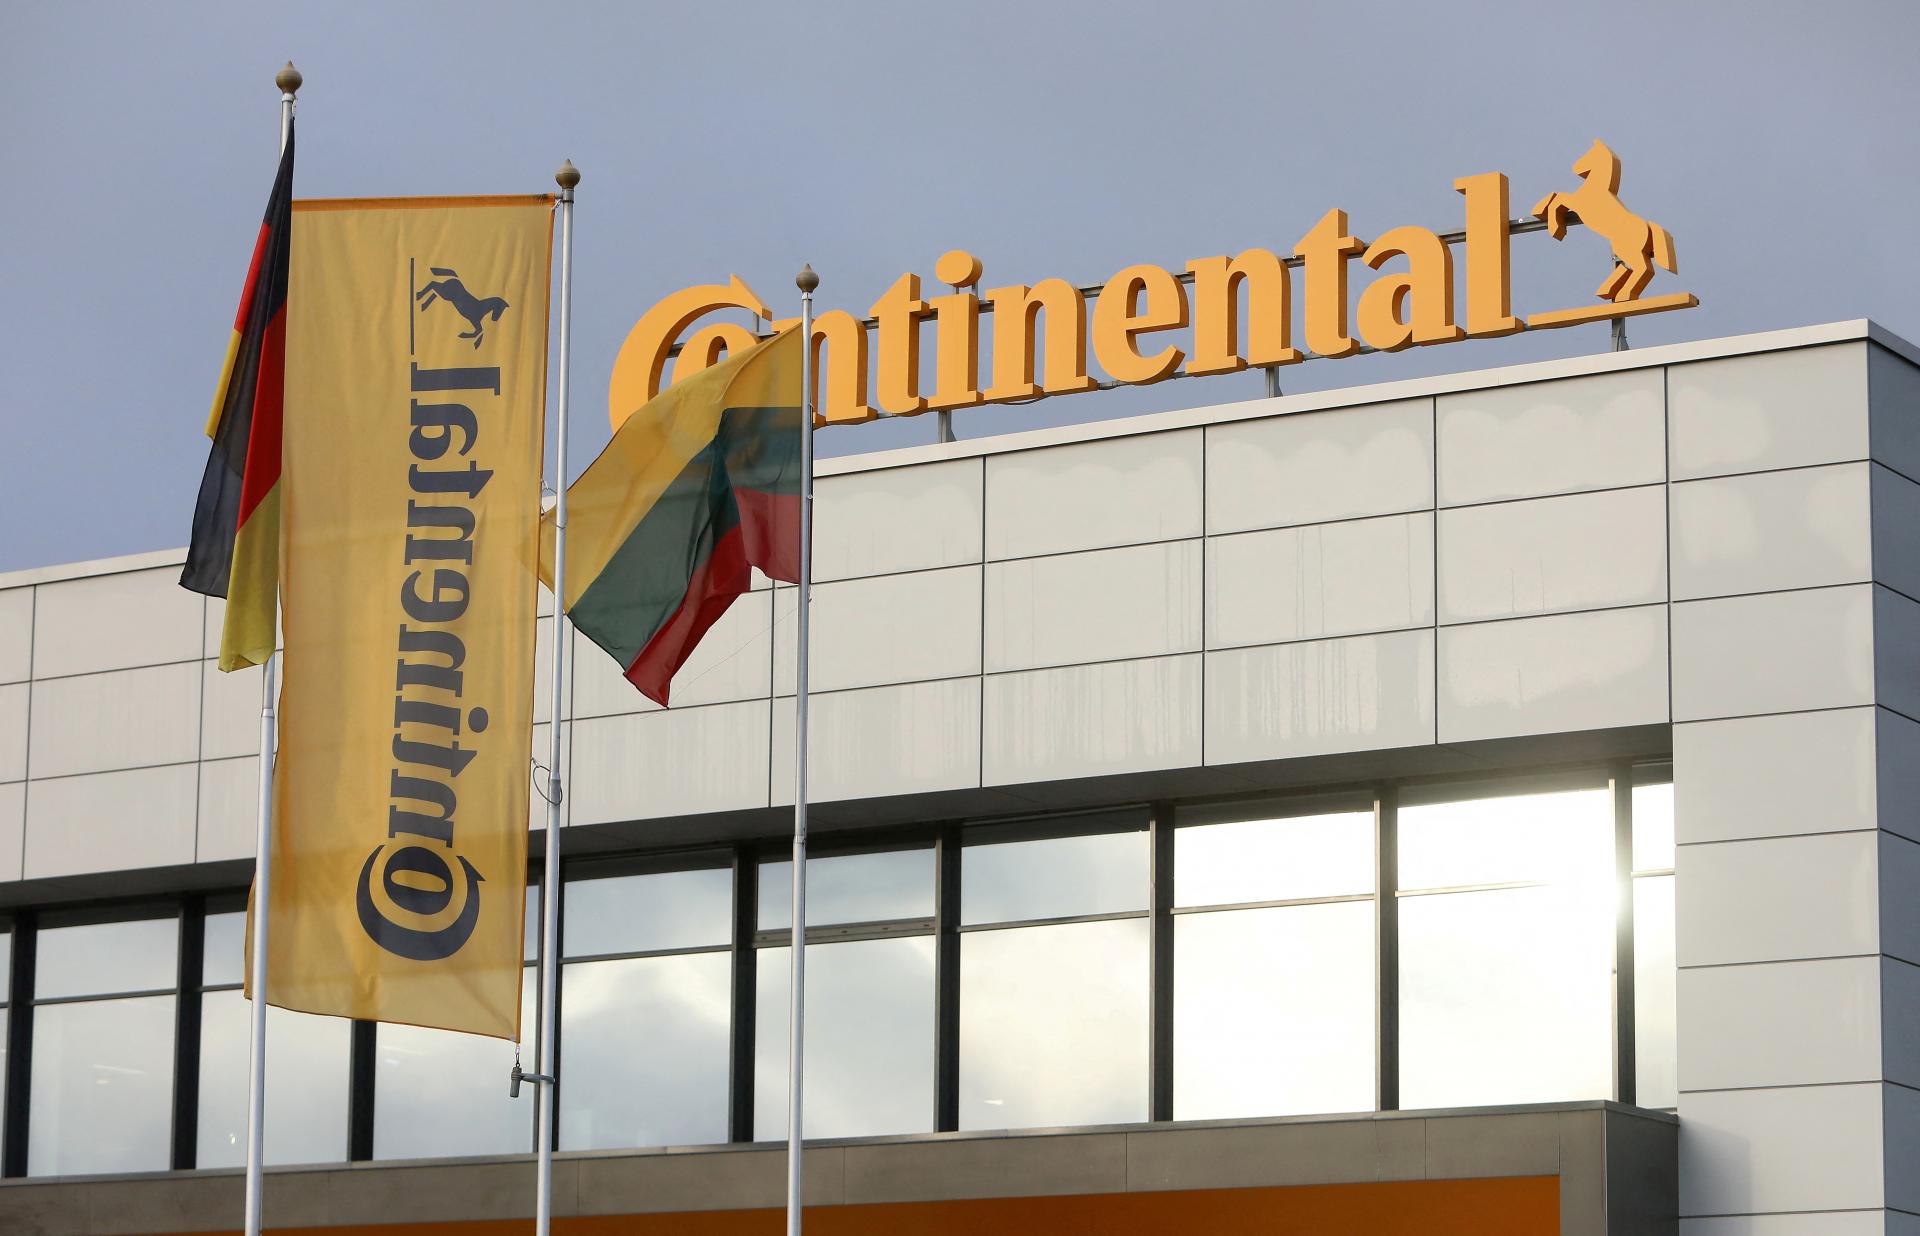 Nemecký výrobca autokomponentov Continental zruší tisíce pracovných miest